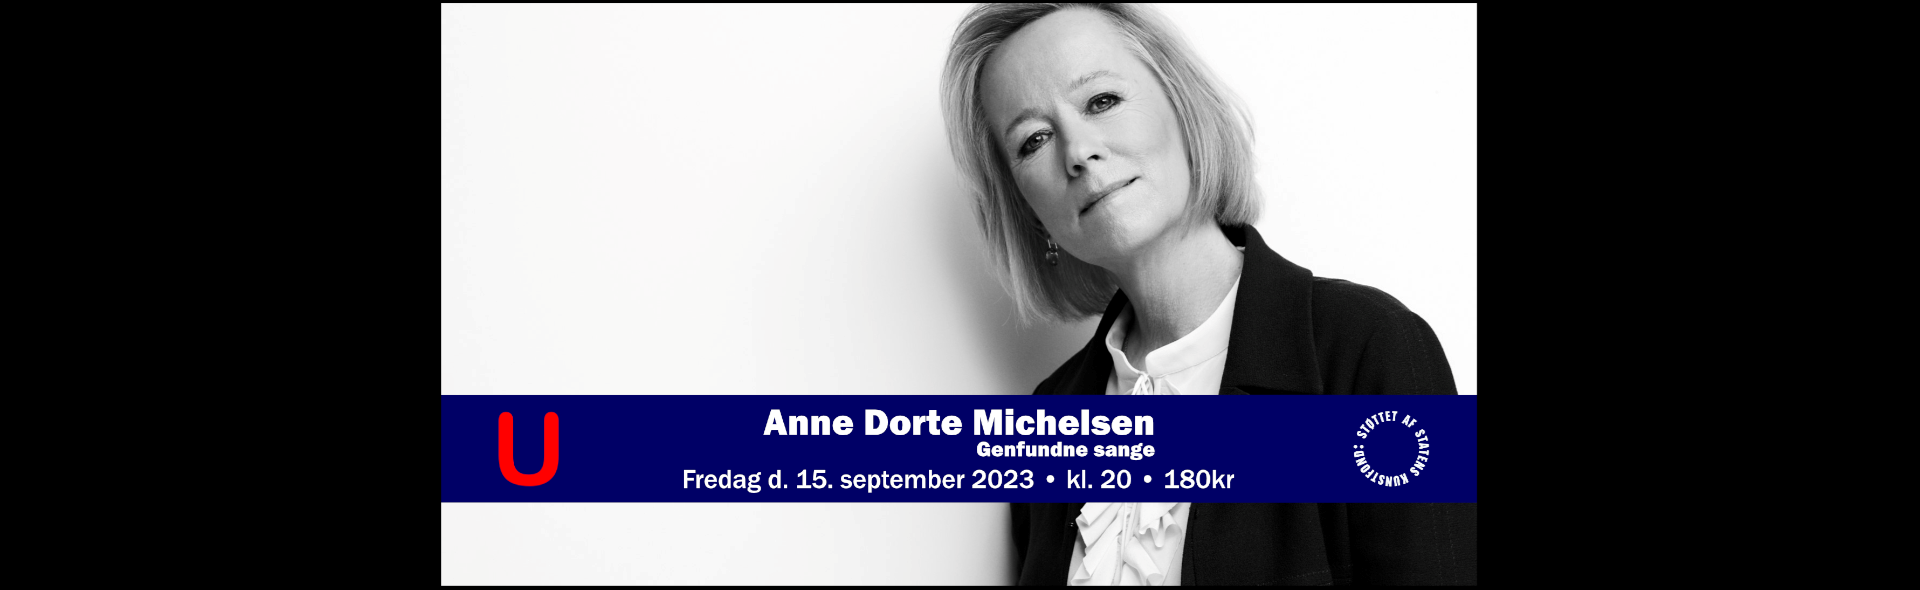 Anne Dorte Michelsen Trio_slide_poster